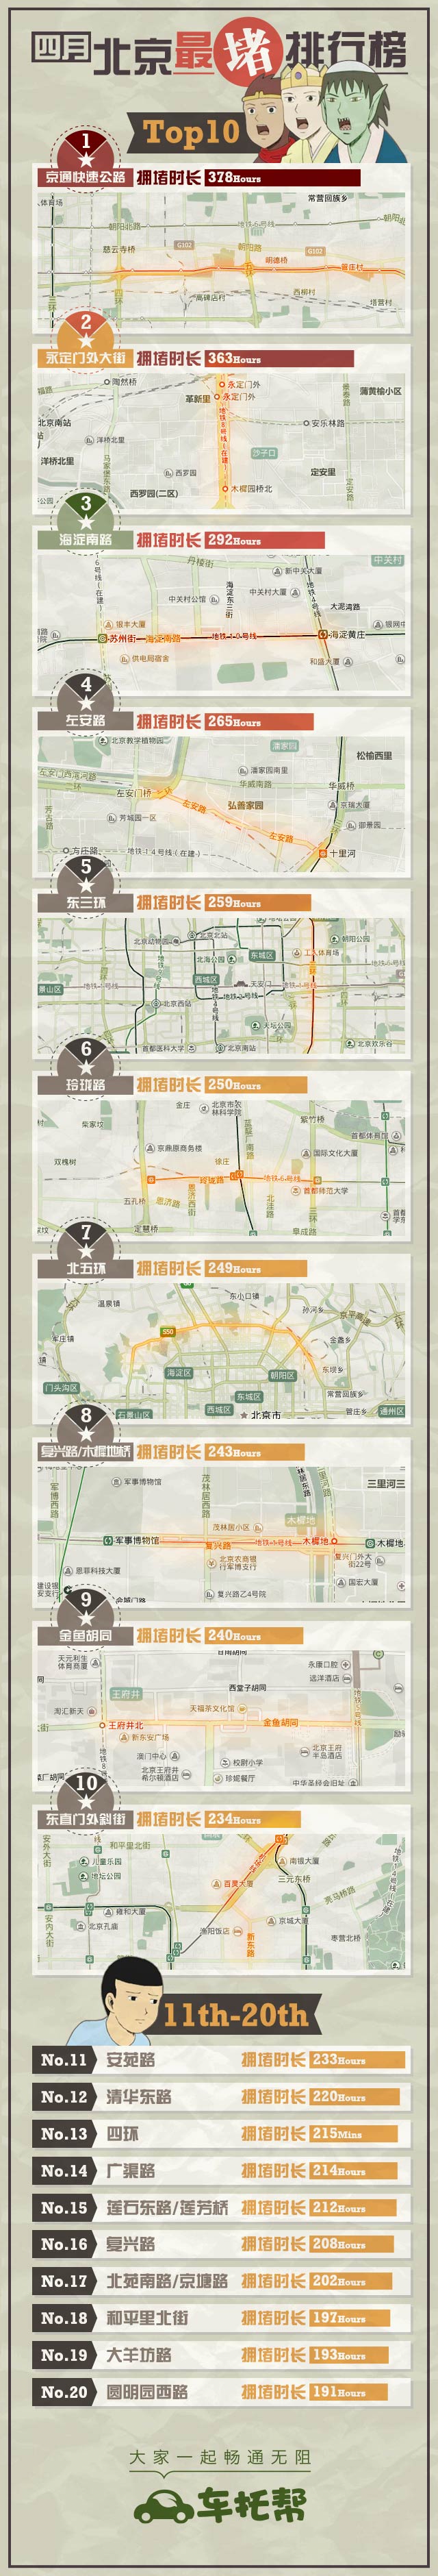 车托帮发布北京4月最堵路段排行榜